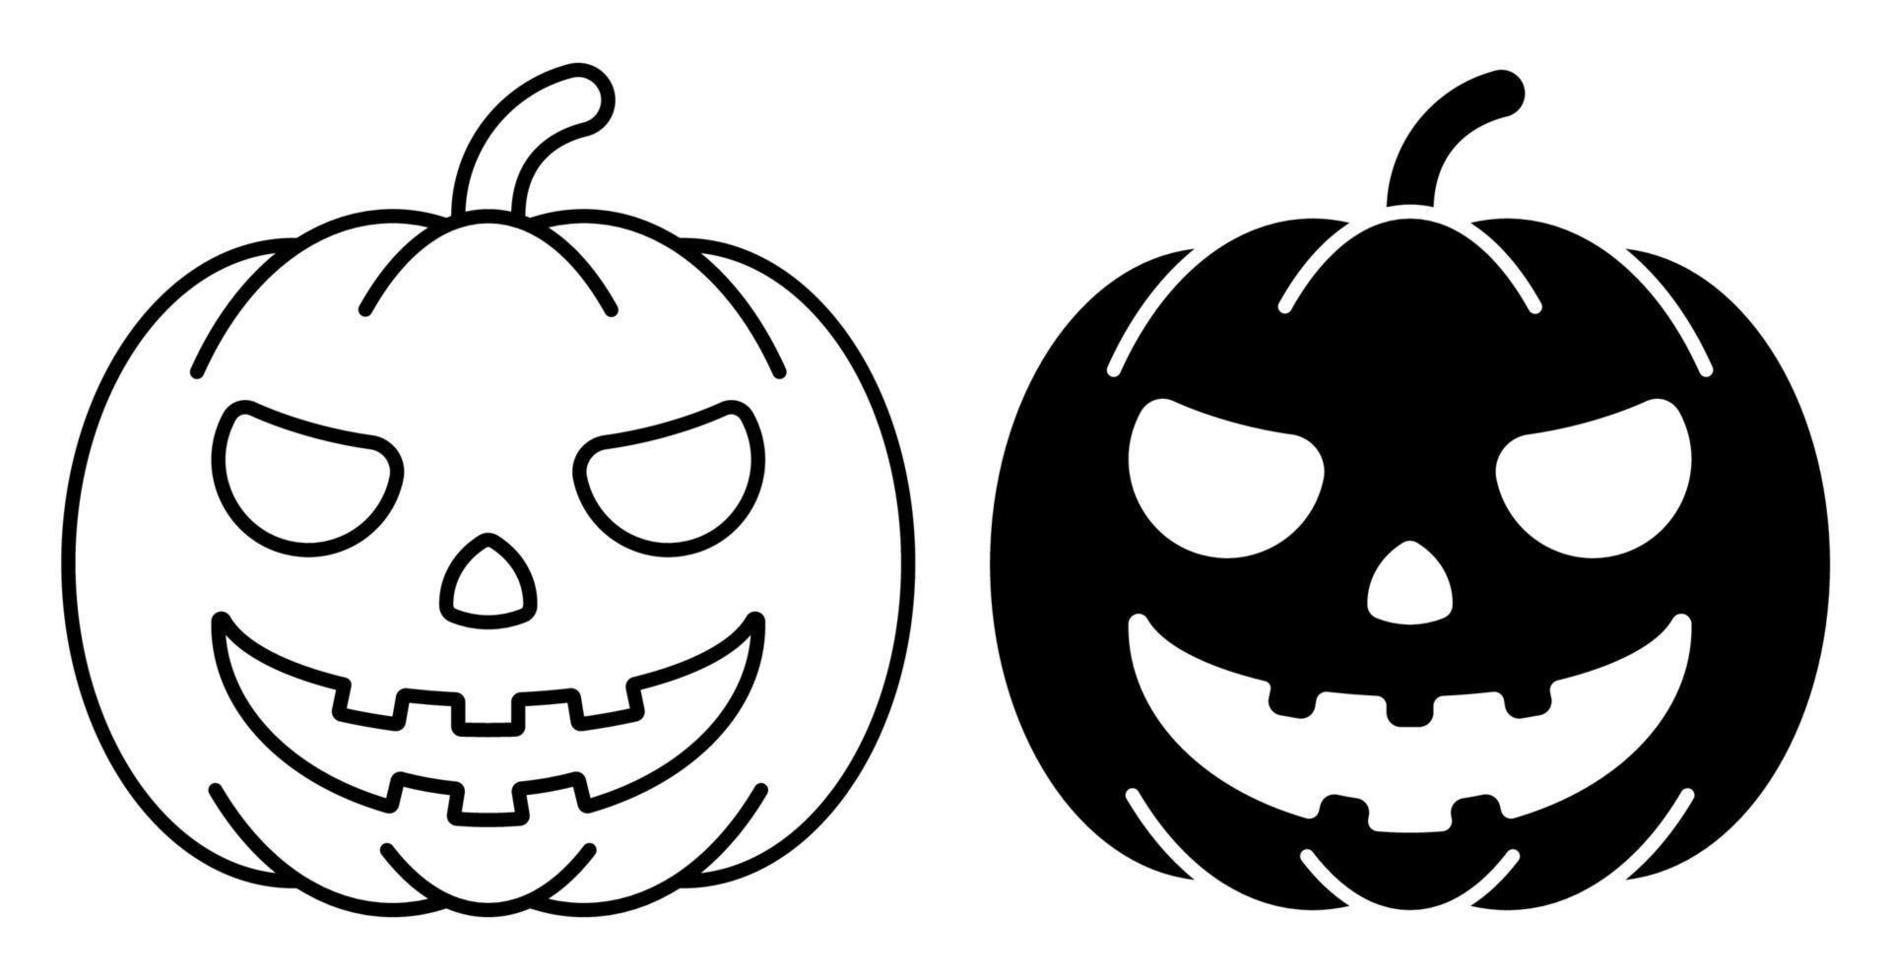 ícone linear. fruta abóbora assustadora. outono abóboras de halloween. vetor preto e branco simples isolado no fundo branco